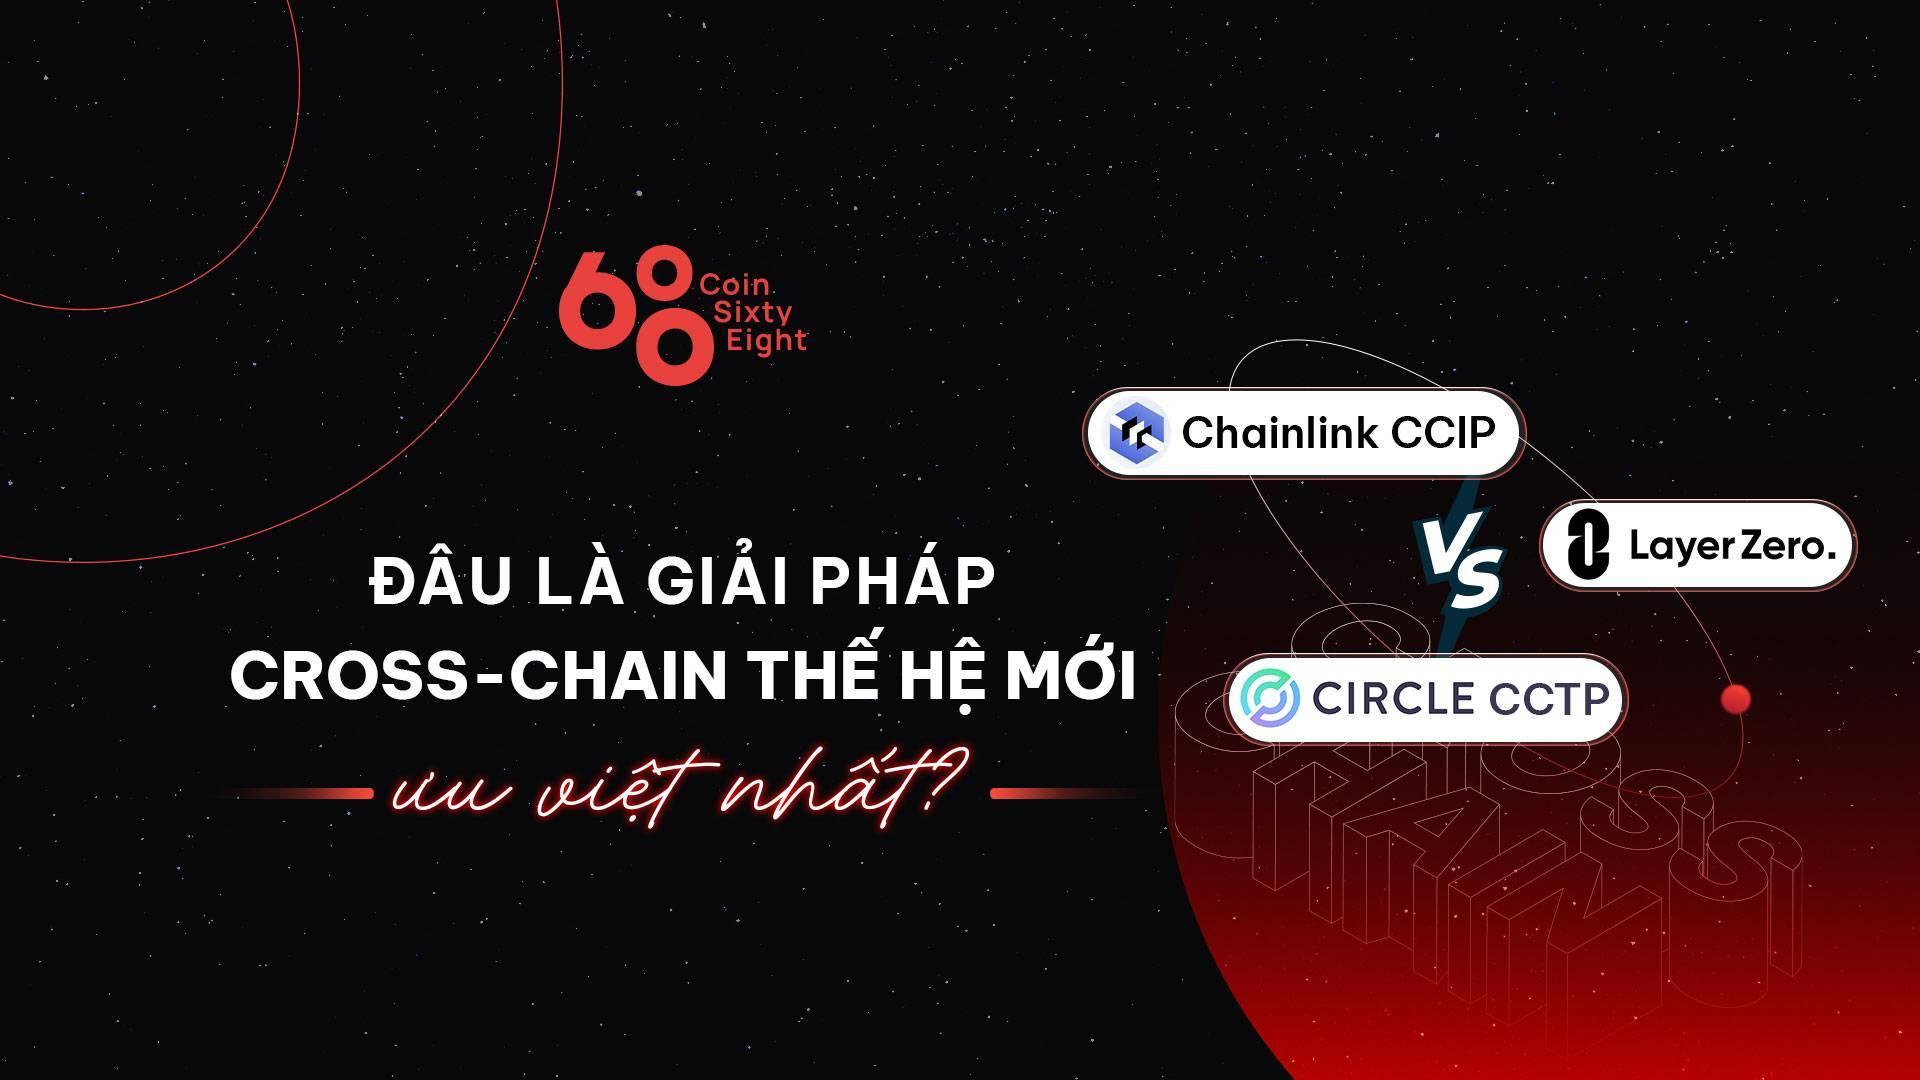 so-sanh-giai-phap-cross-chain-cua-layerzero-chainlink-ccip-va-circle-cctp